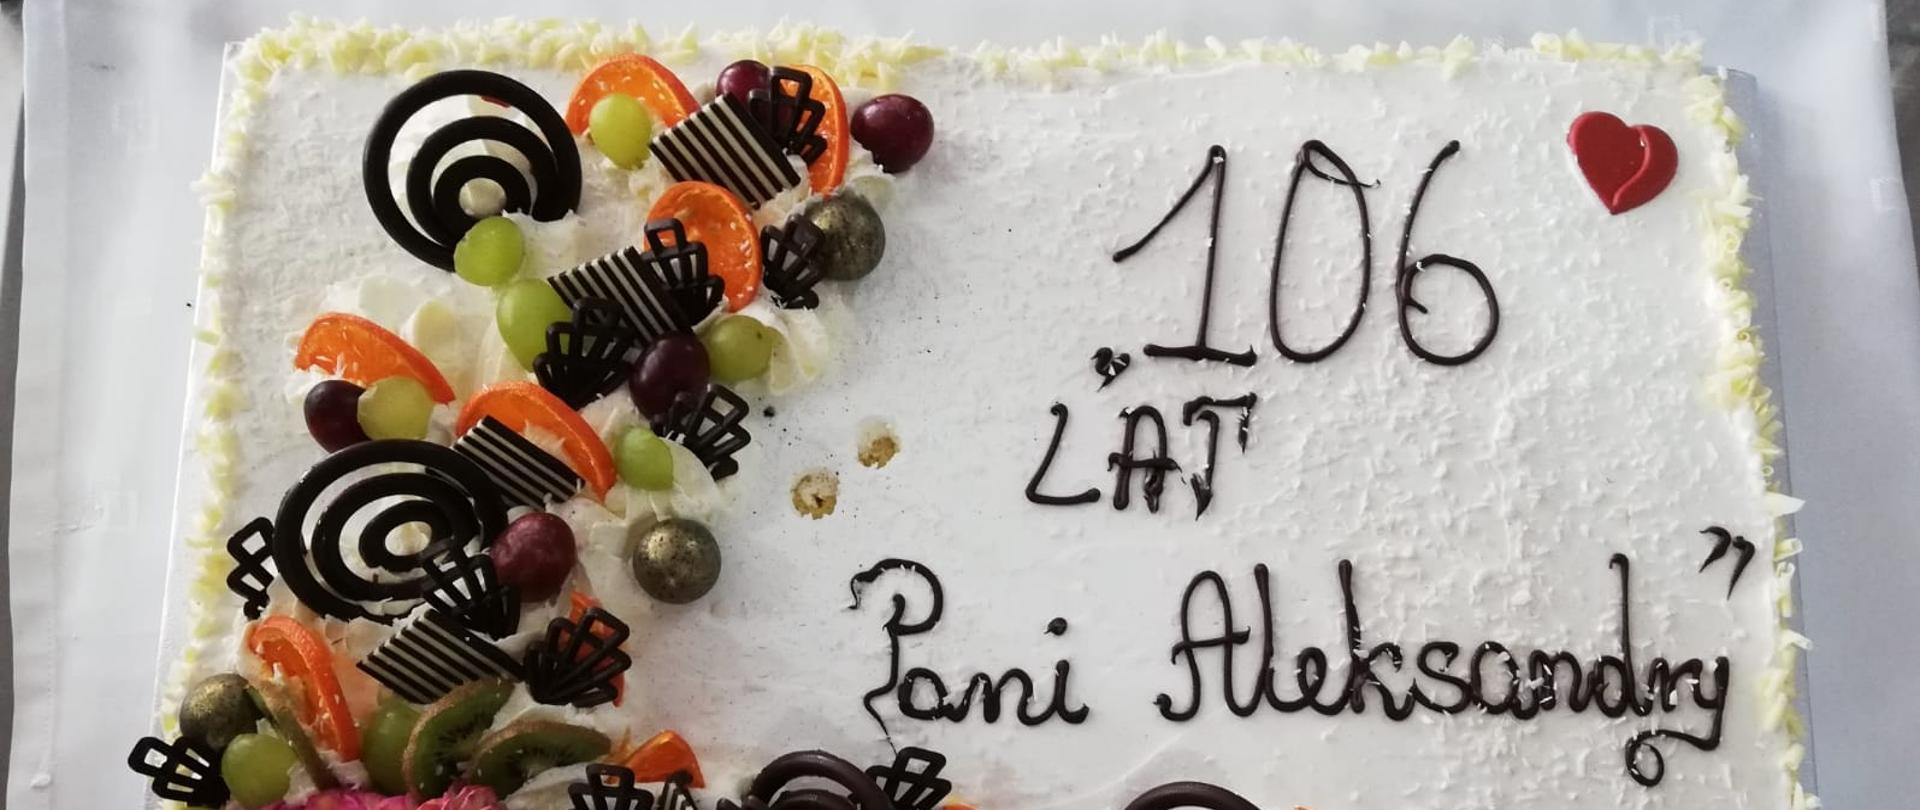 Tort z napisem: "106 lat Pani Aleksandry", na torcie znajdują się ozdoby z czekolady i owoców.